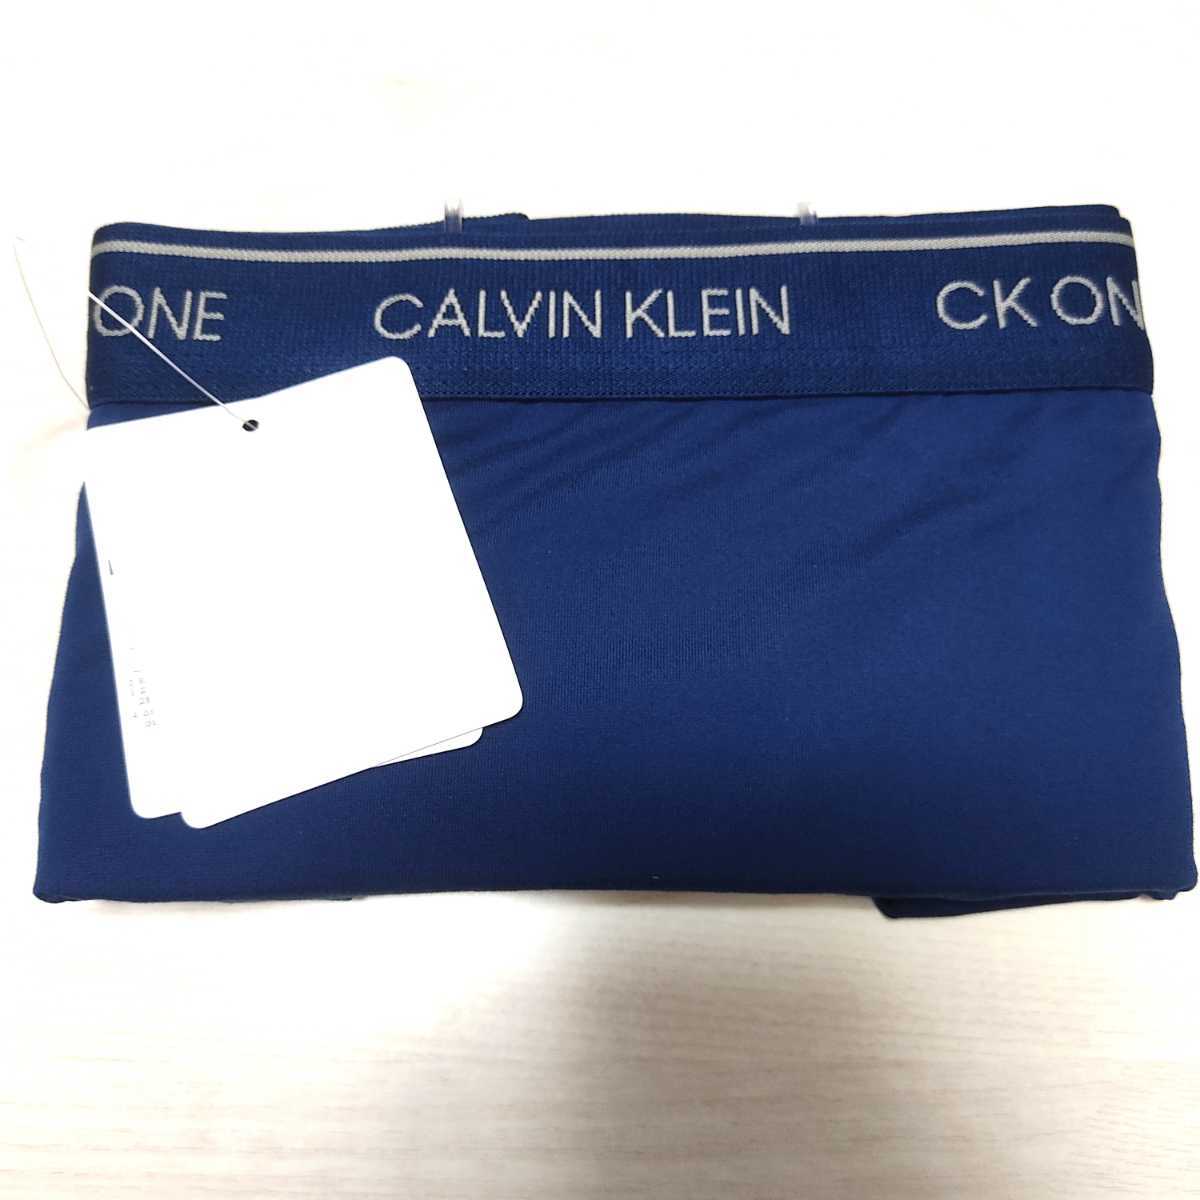 CALVIN KLEINカルバンクライン CK one Micro マイクロ ボクサーパンツ 前閉じ メンズ NB2226 ネイビー 海外S(日本M)